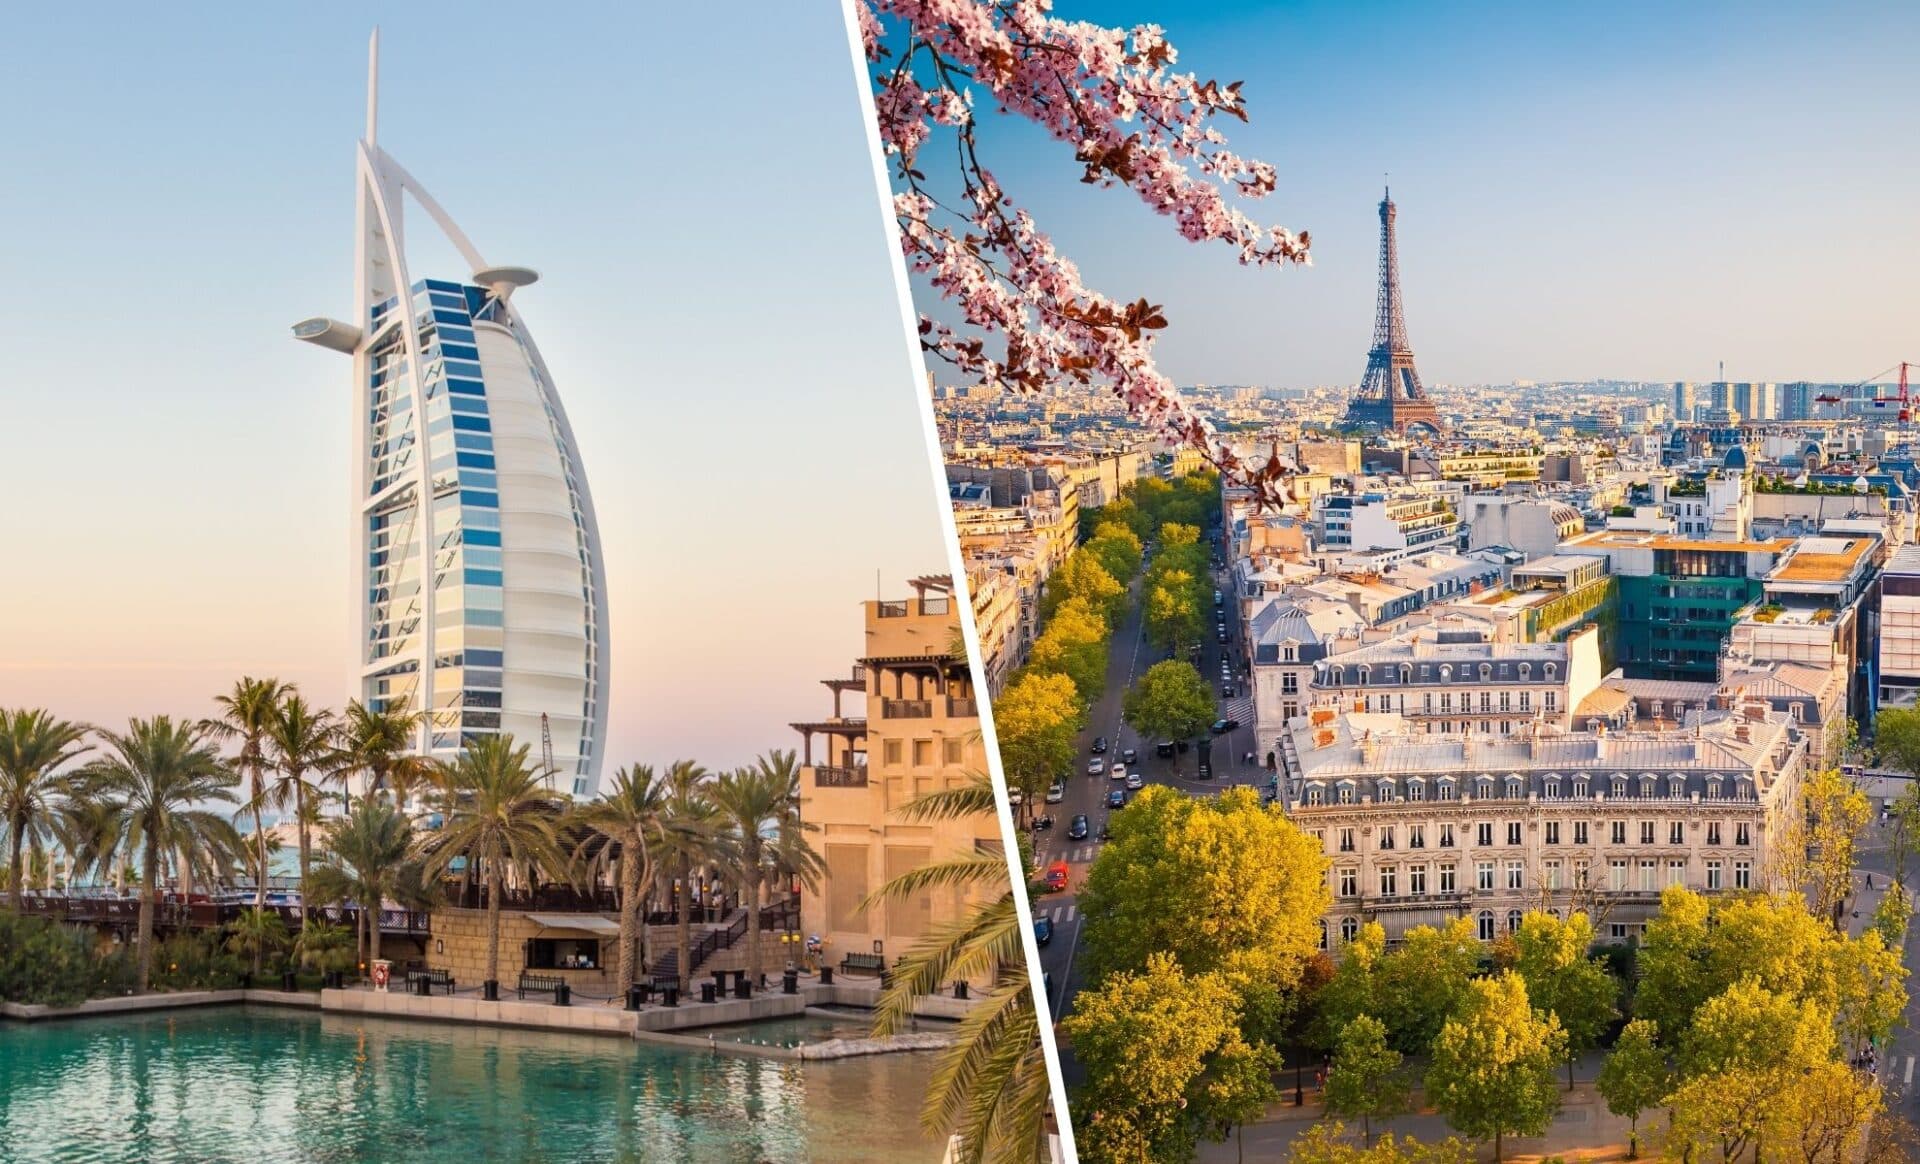 Immobilier : Paris cède sa première place à Dubaï qui attire davantage les ultrariches